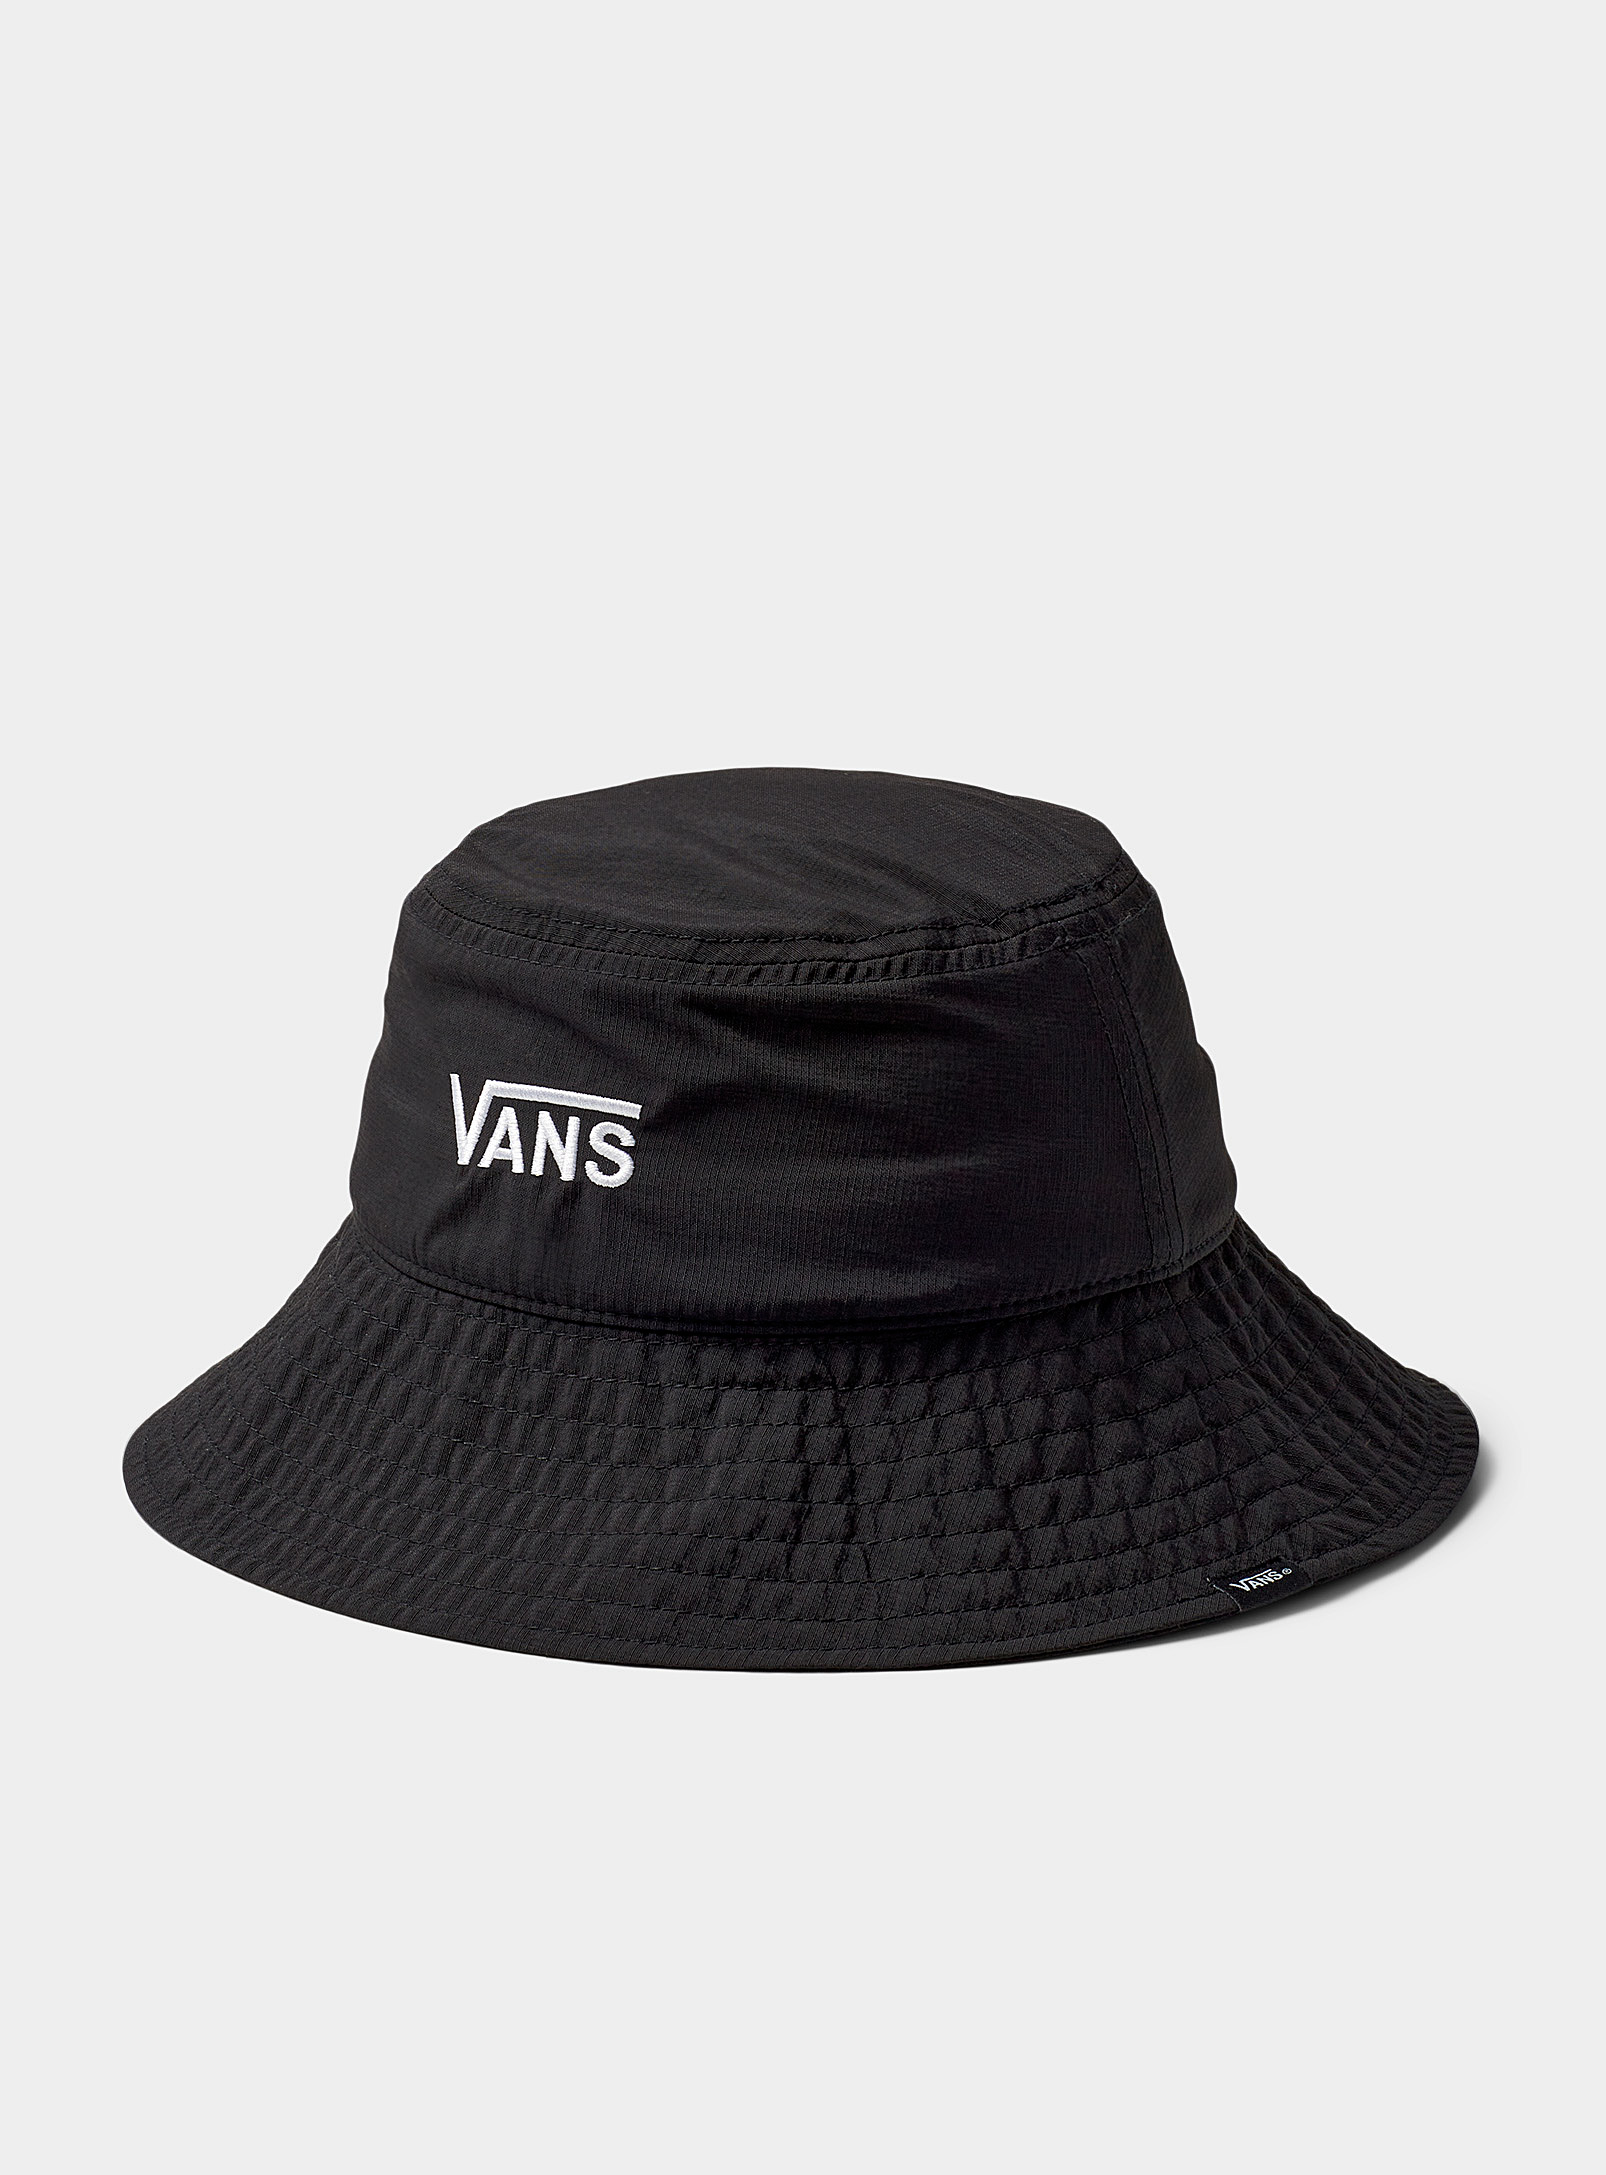 Vans Signature Nylon Bucket Hat In Black